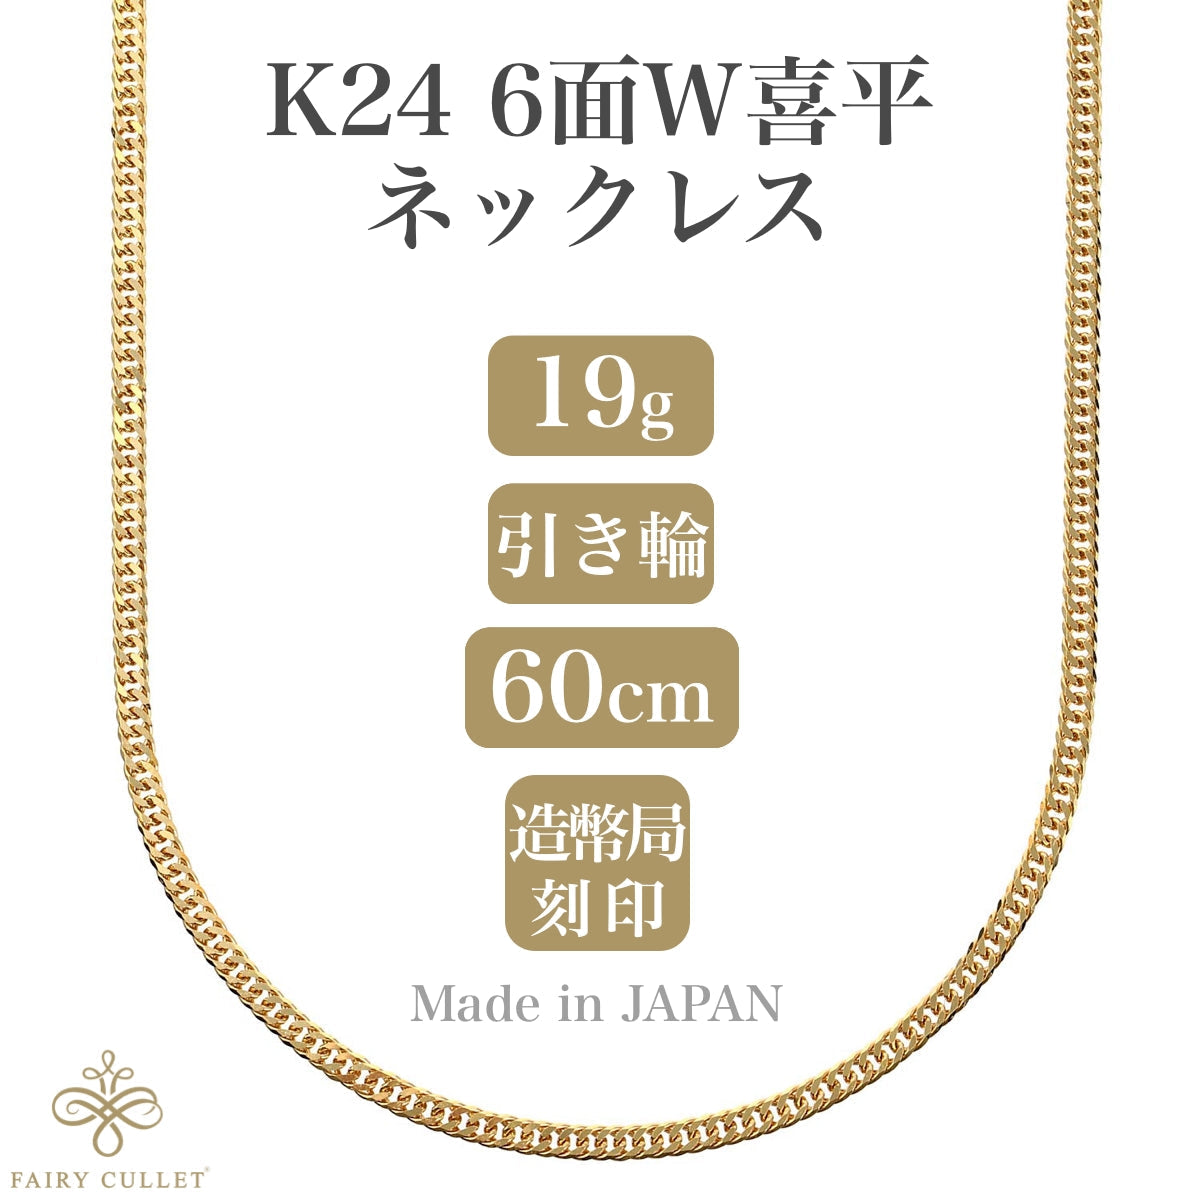 24金ネックレス K24 6面W喜平チェーン 日本製 純金 検定印 19g 60cm 引き輪